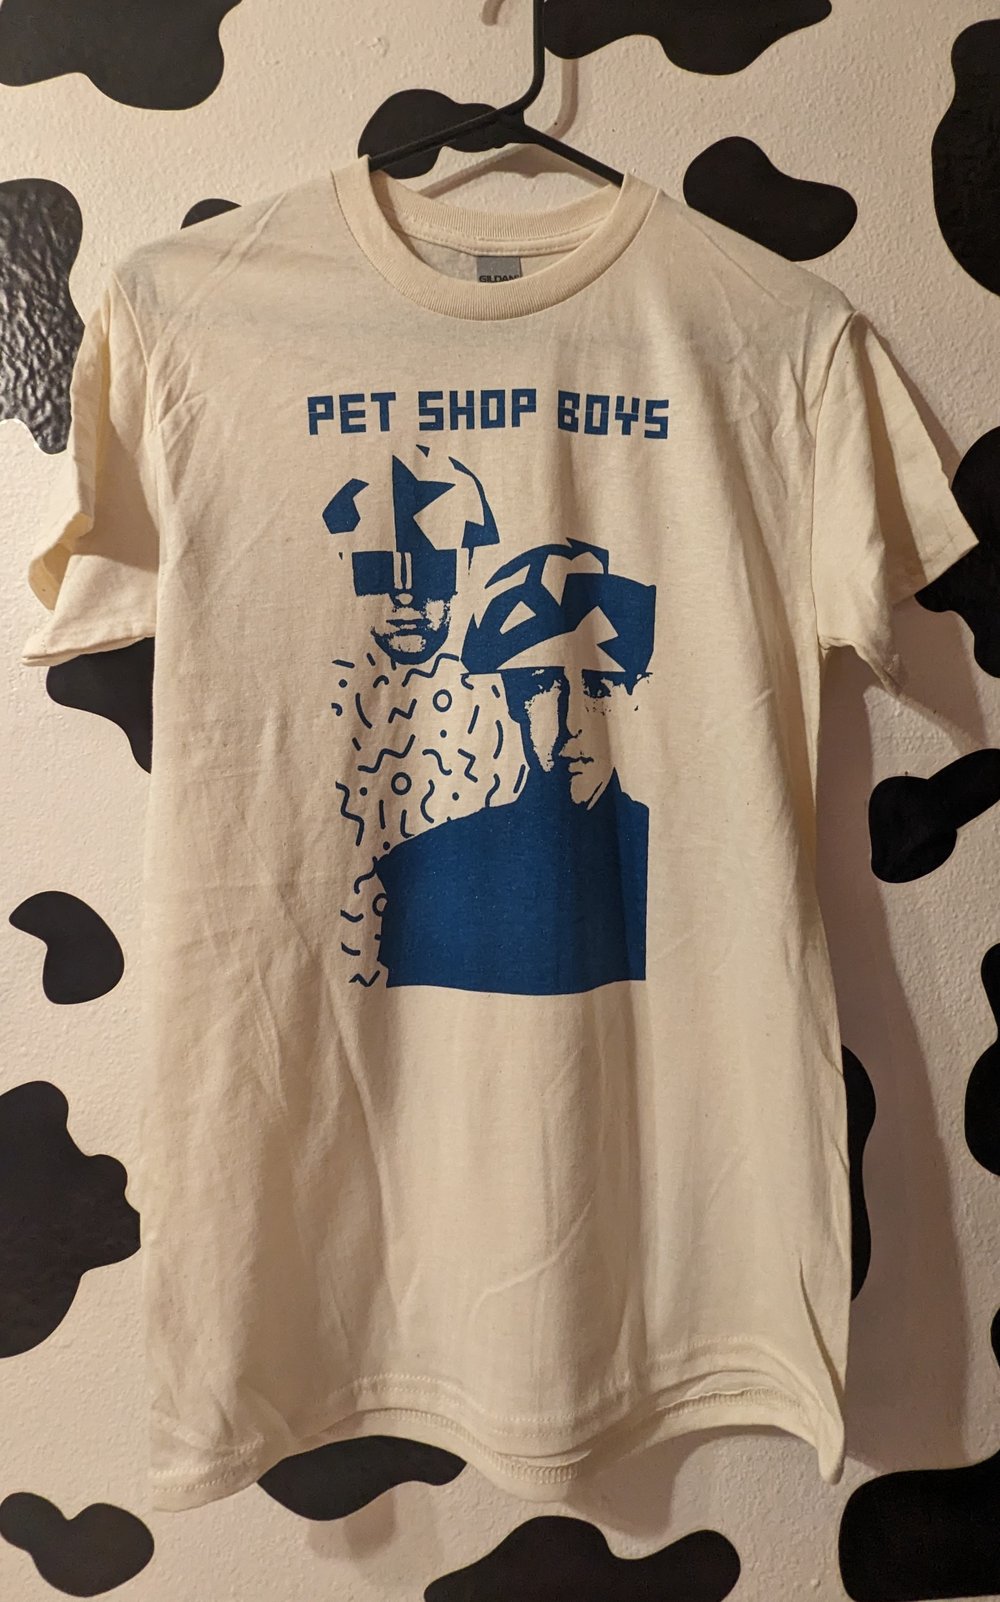 PET SHOP BOYS shirt